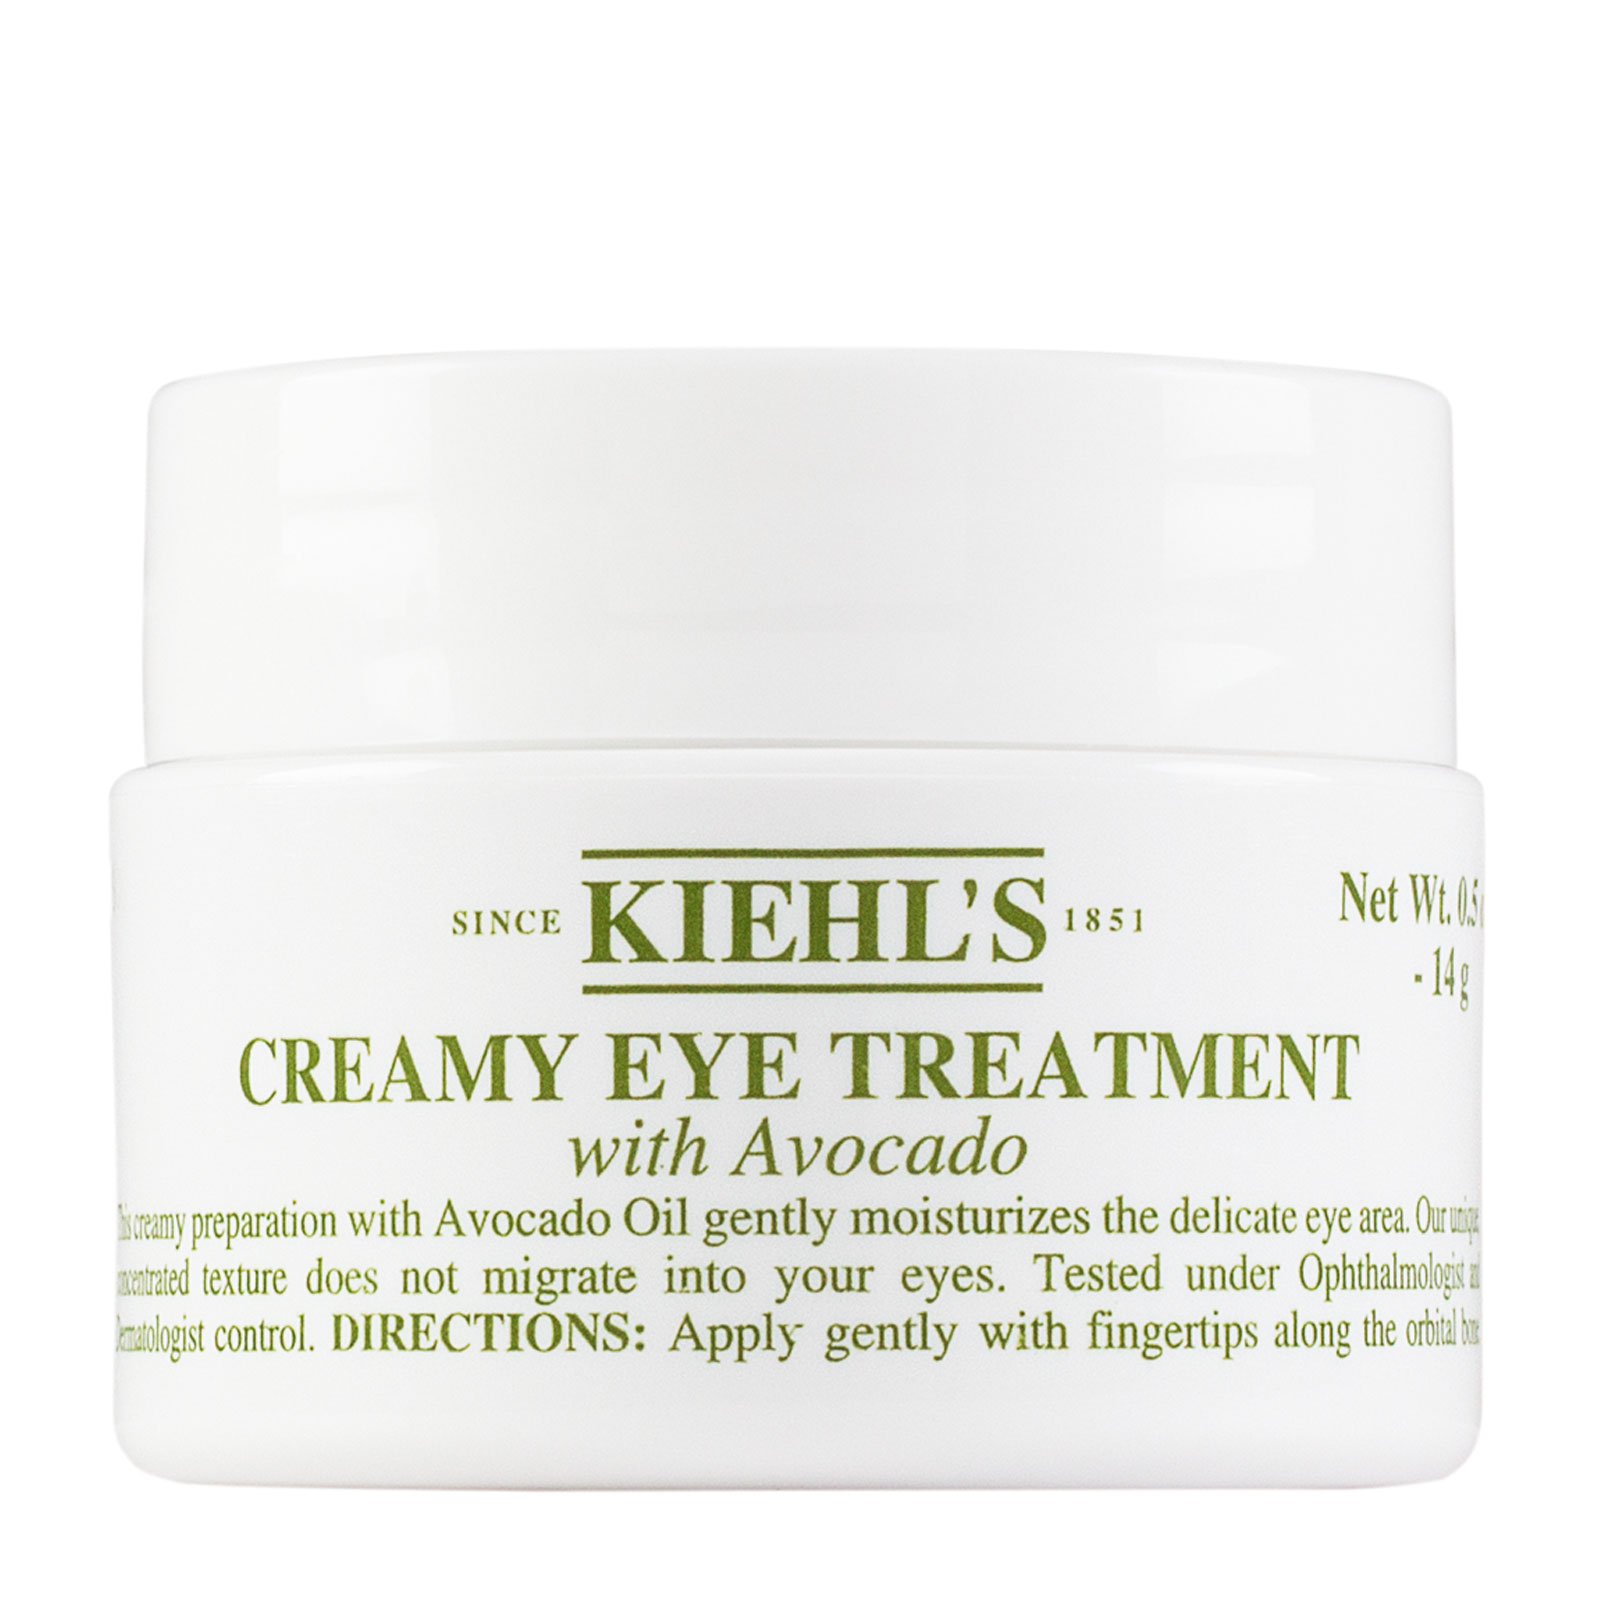 Kiehl's Creamy Eye Treatment With Avocado 14Ml